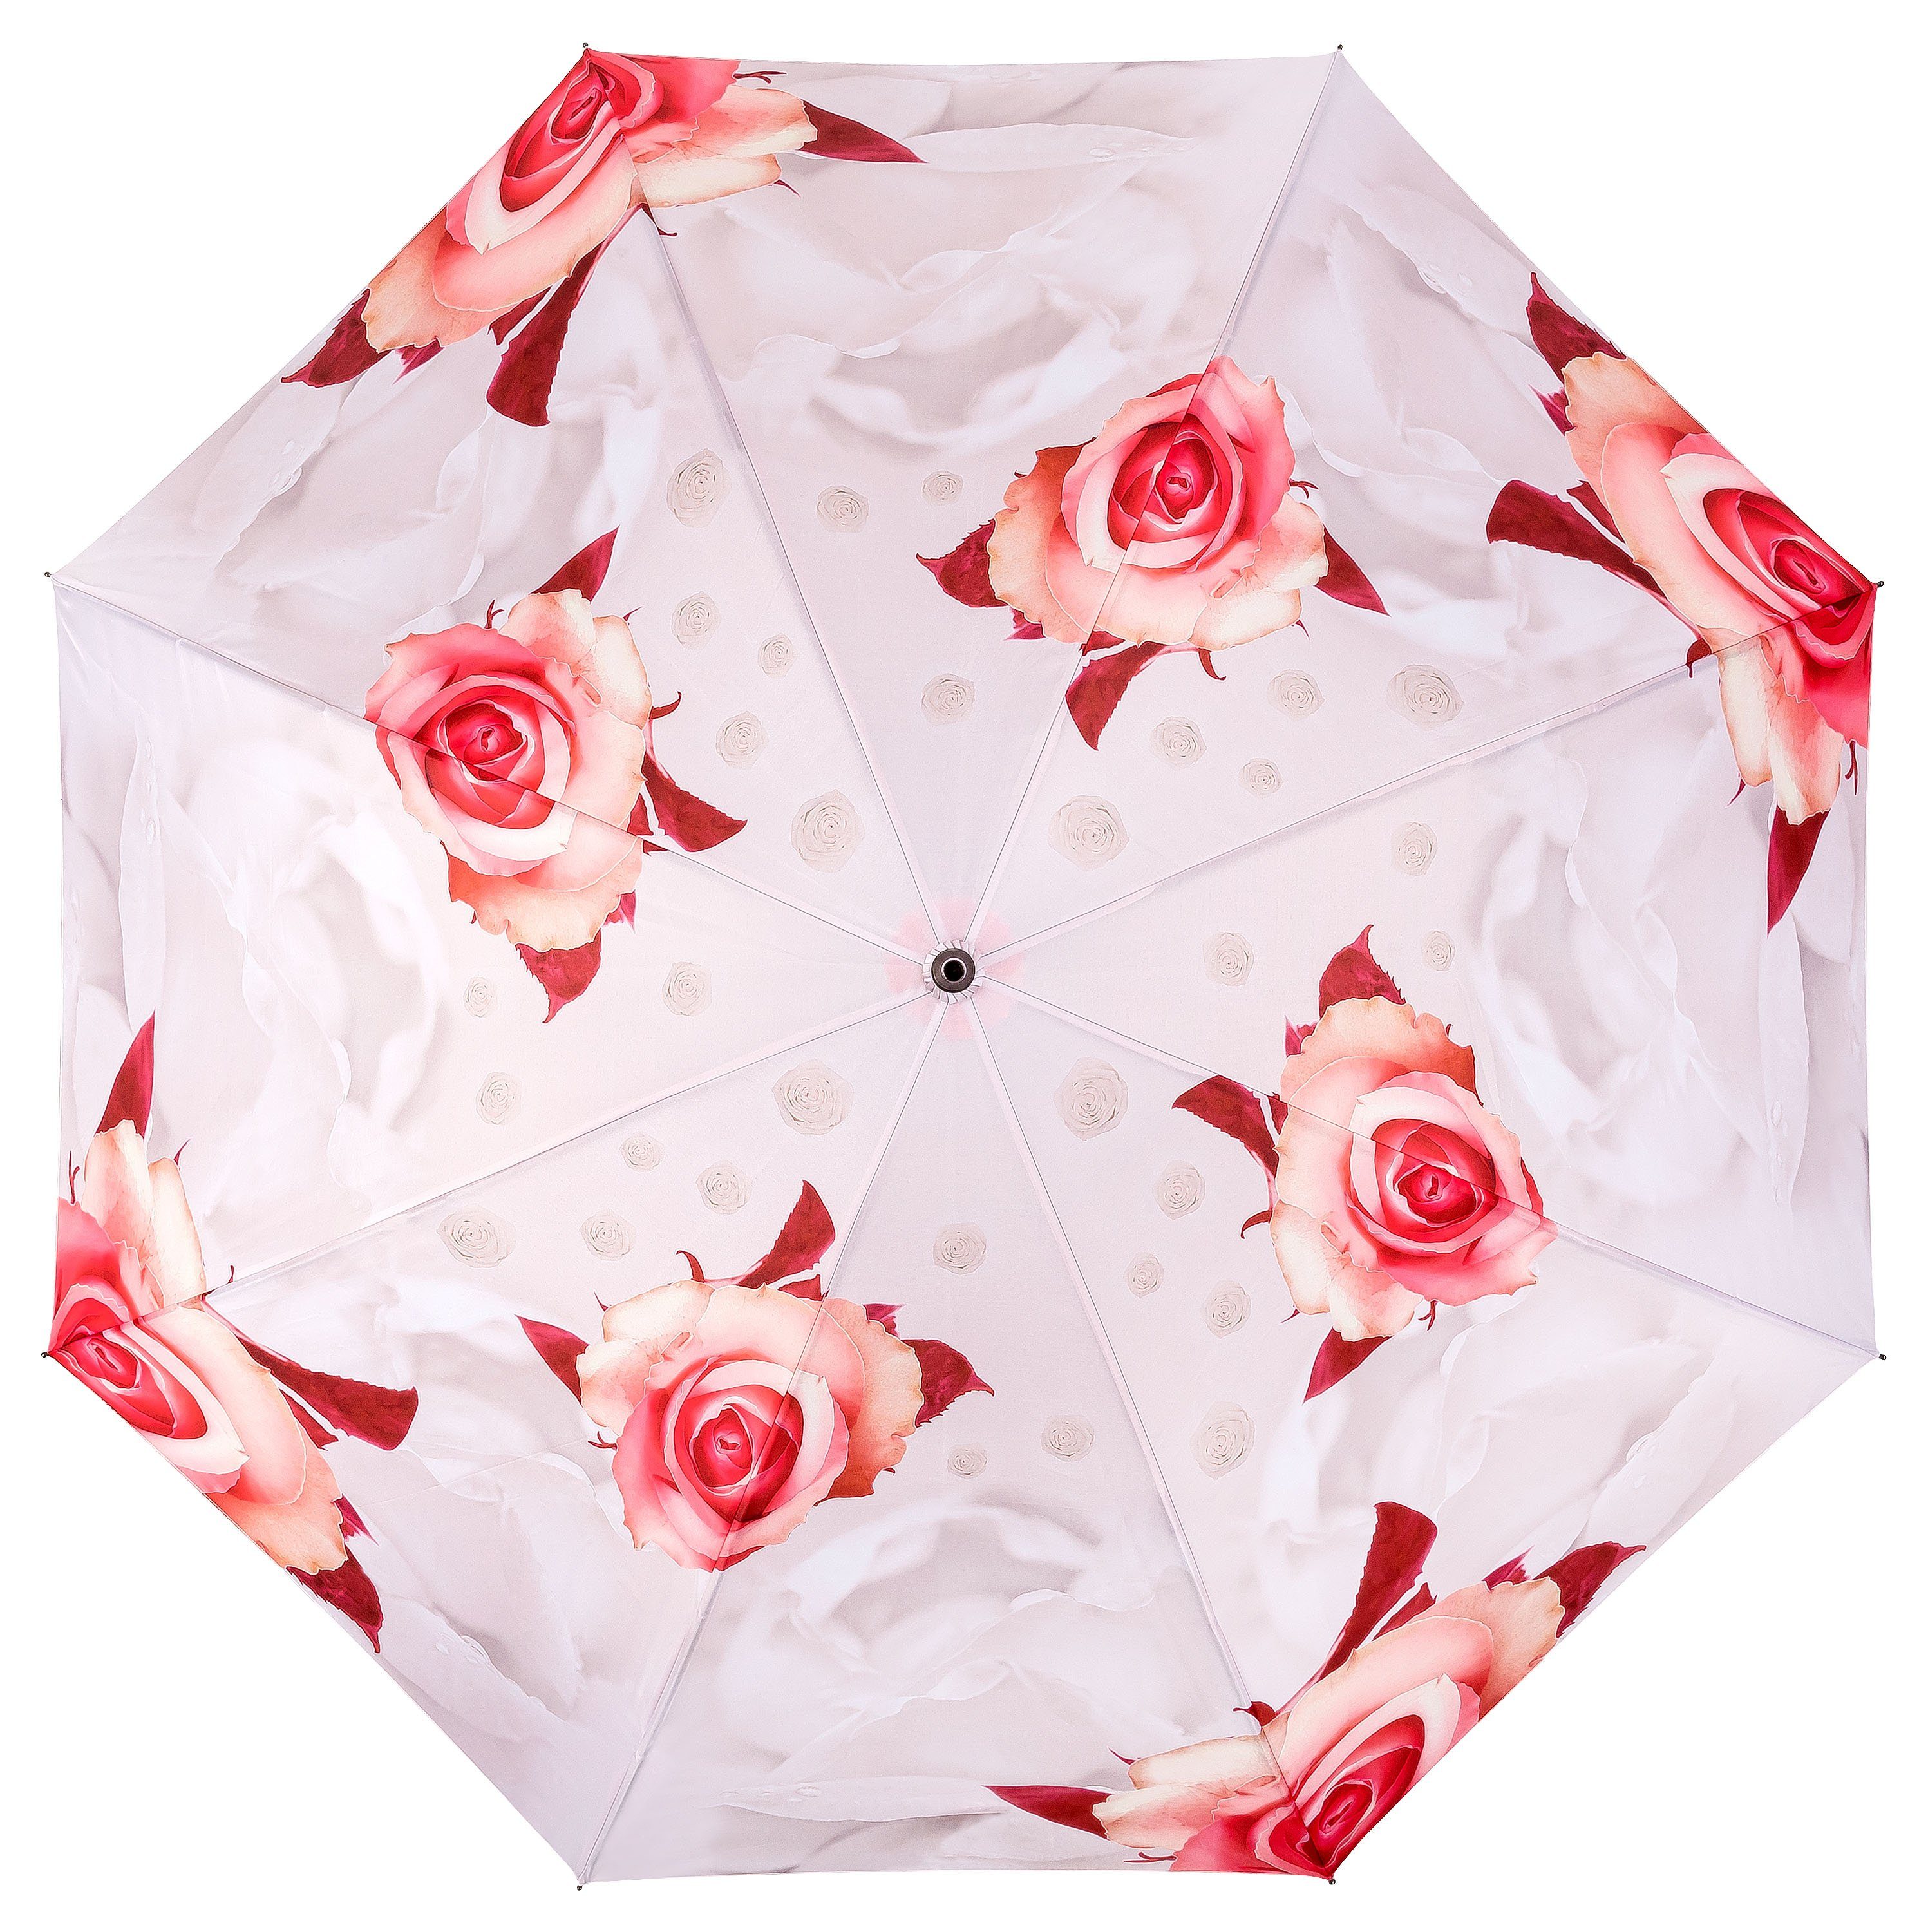 von Hochzeit creme Rosen Lilienfeld Blumen Stockregenschirm Blumenmuster Auf-Automatik, Regenschirm